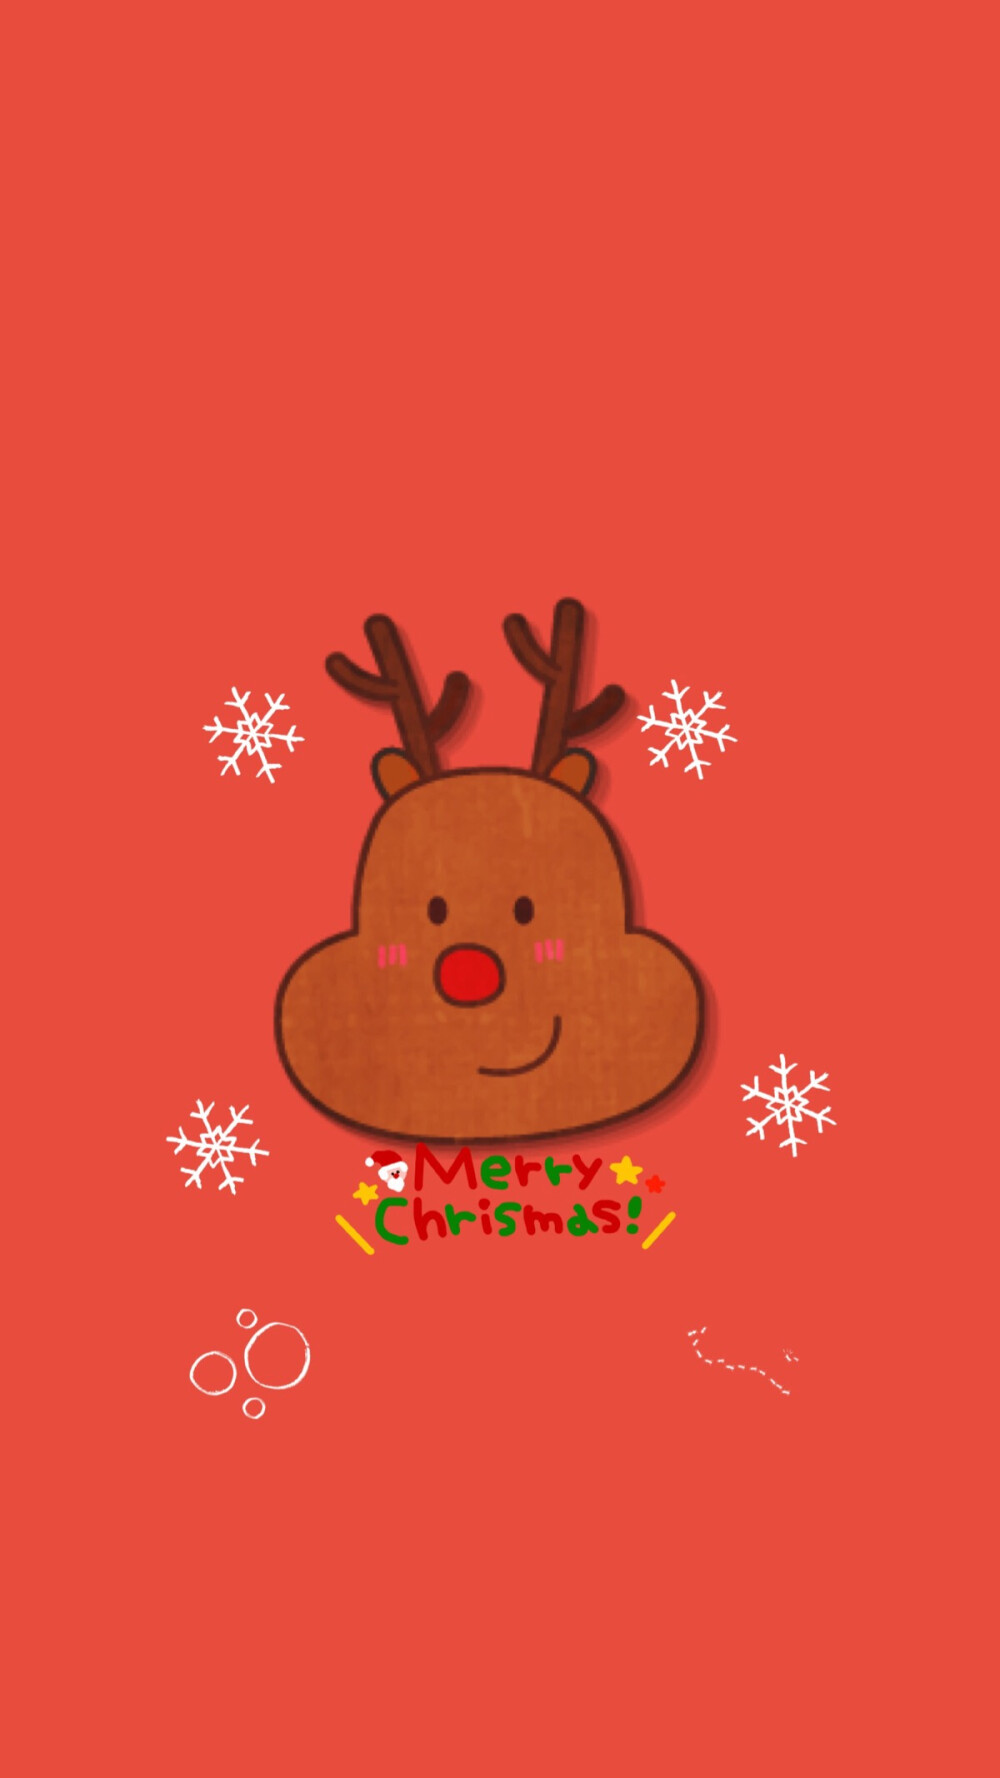 Merry Christmas 圣诞节 装扮 圣诞老人 雪人 麋鹿 雪橇 圣诞树 圣诞礼物 素材 壁纸 平铺 高清∘☃*